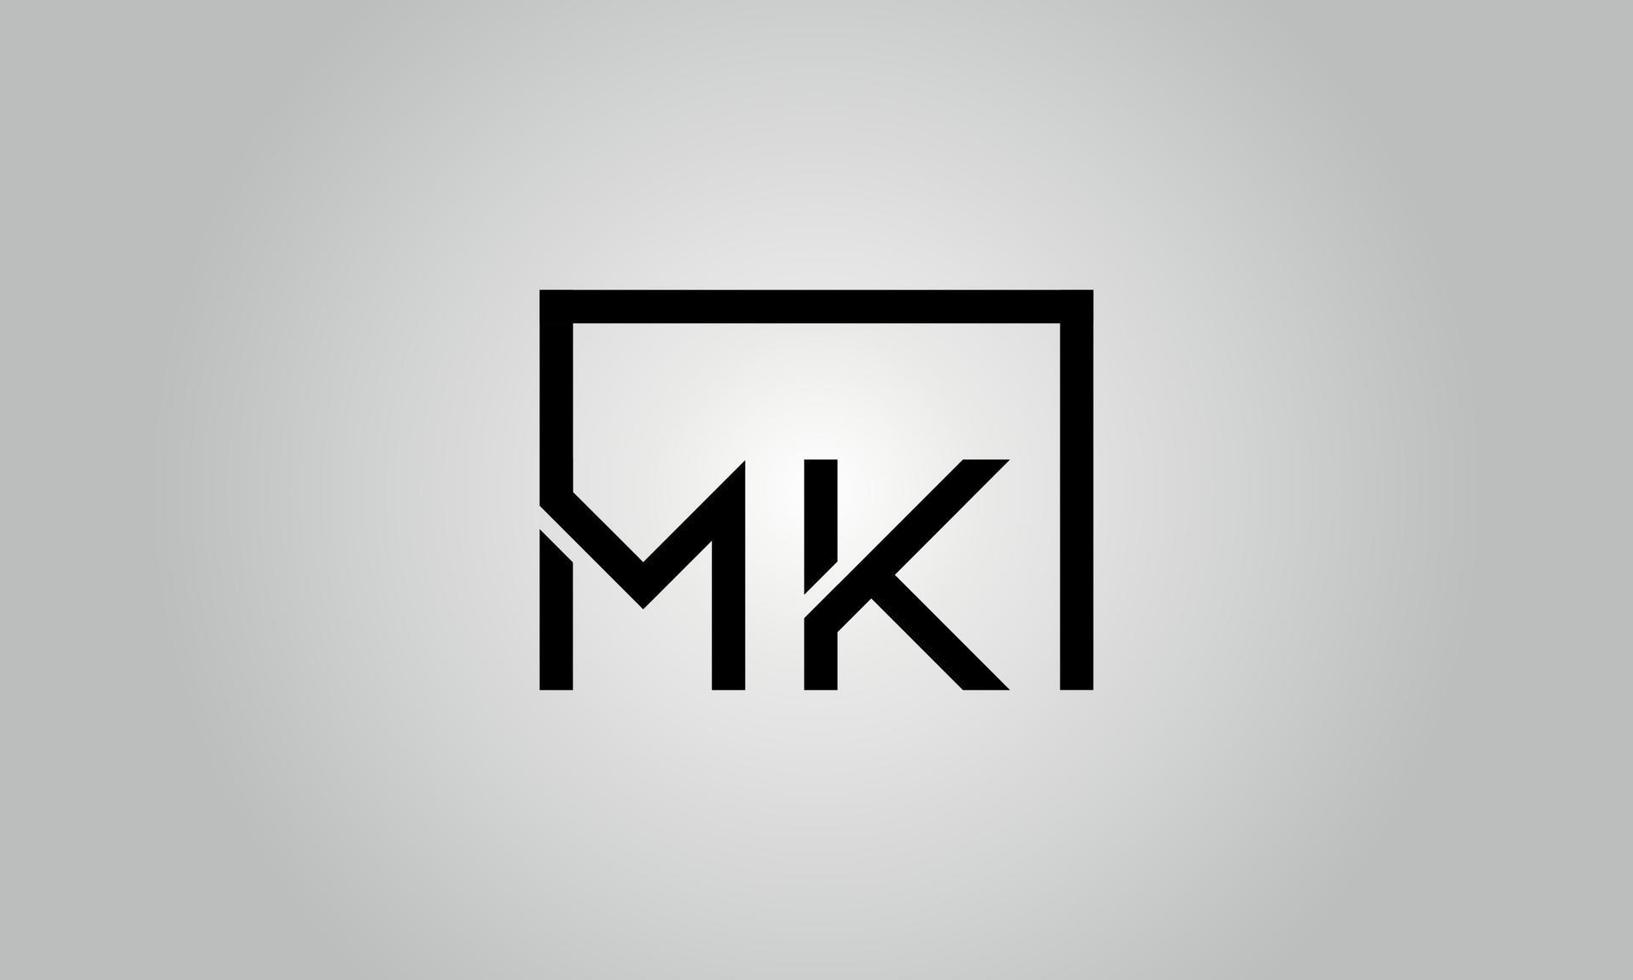 design de logotipo letra mk. mk logotipo com forma quadrada em cores pretas modelo de vetor livre.